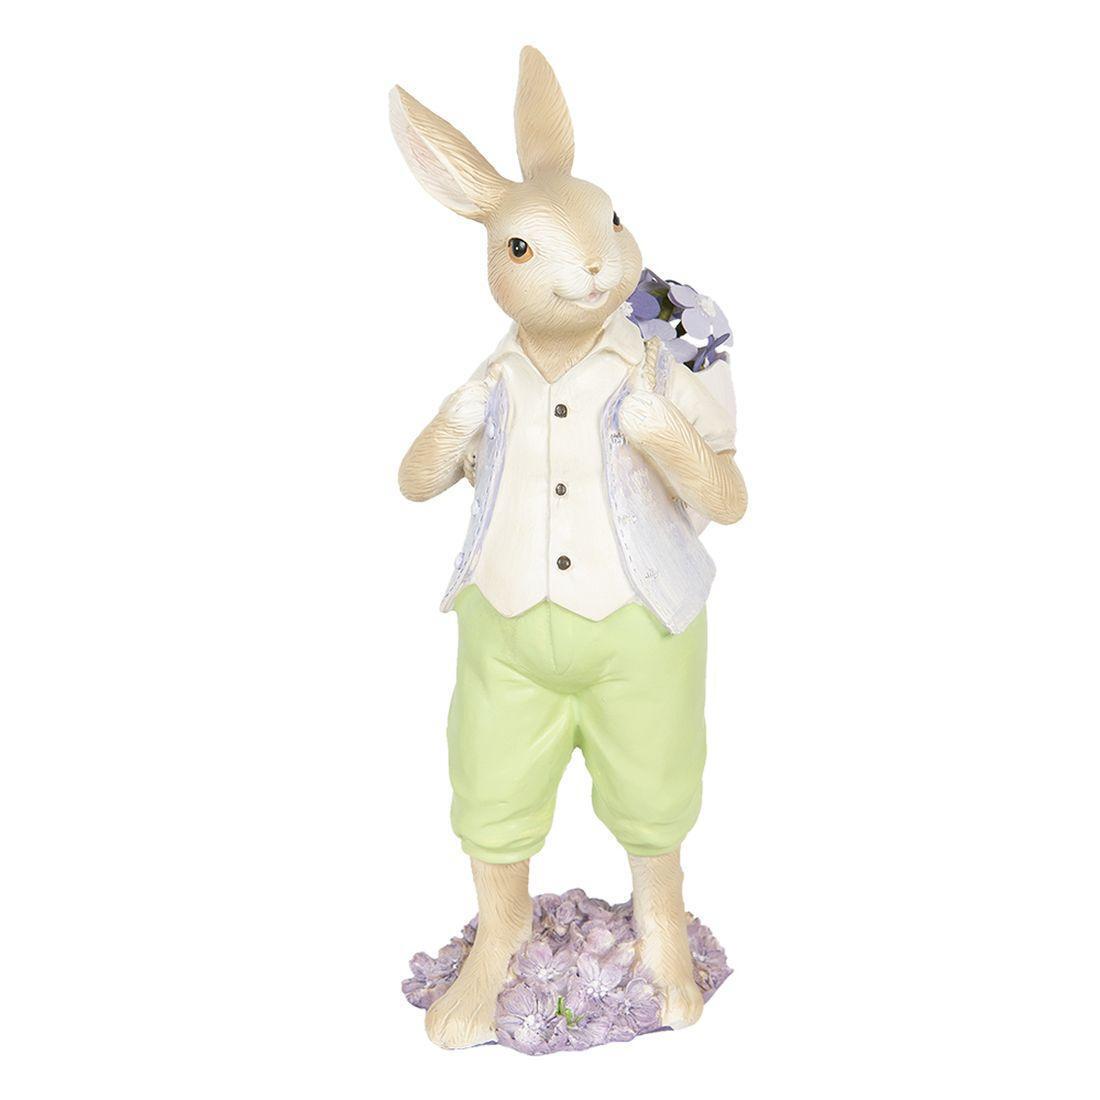 Onderscheppen Vreemdeling Een goede vriend Clayre & Eef Easter Decoration Easter Bunny With Basket 6PR3125  8717459759664 | eBay